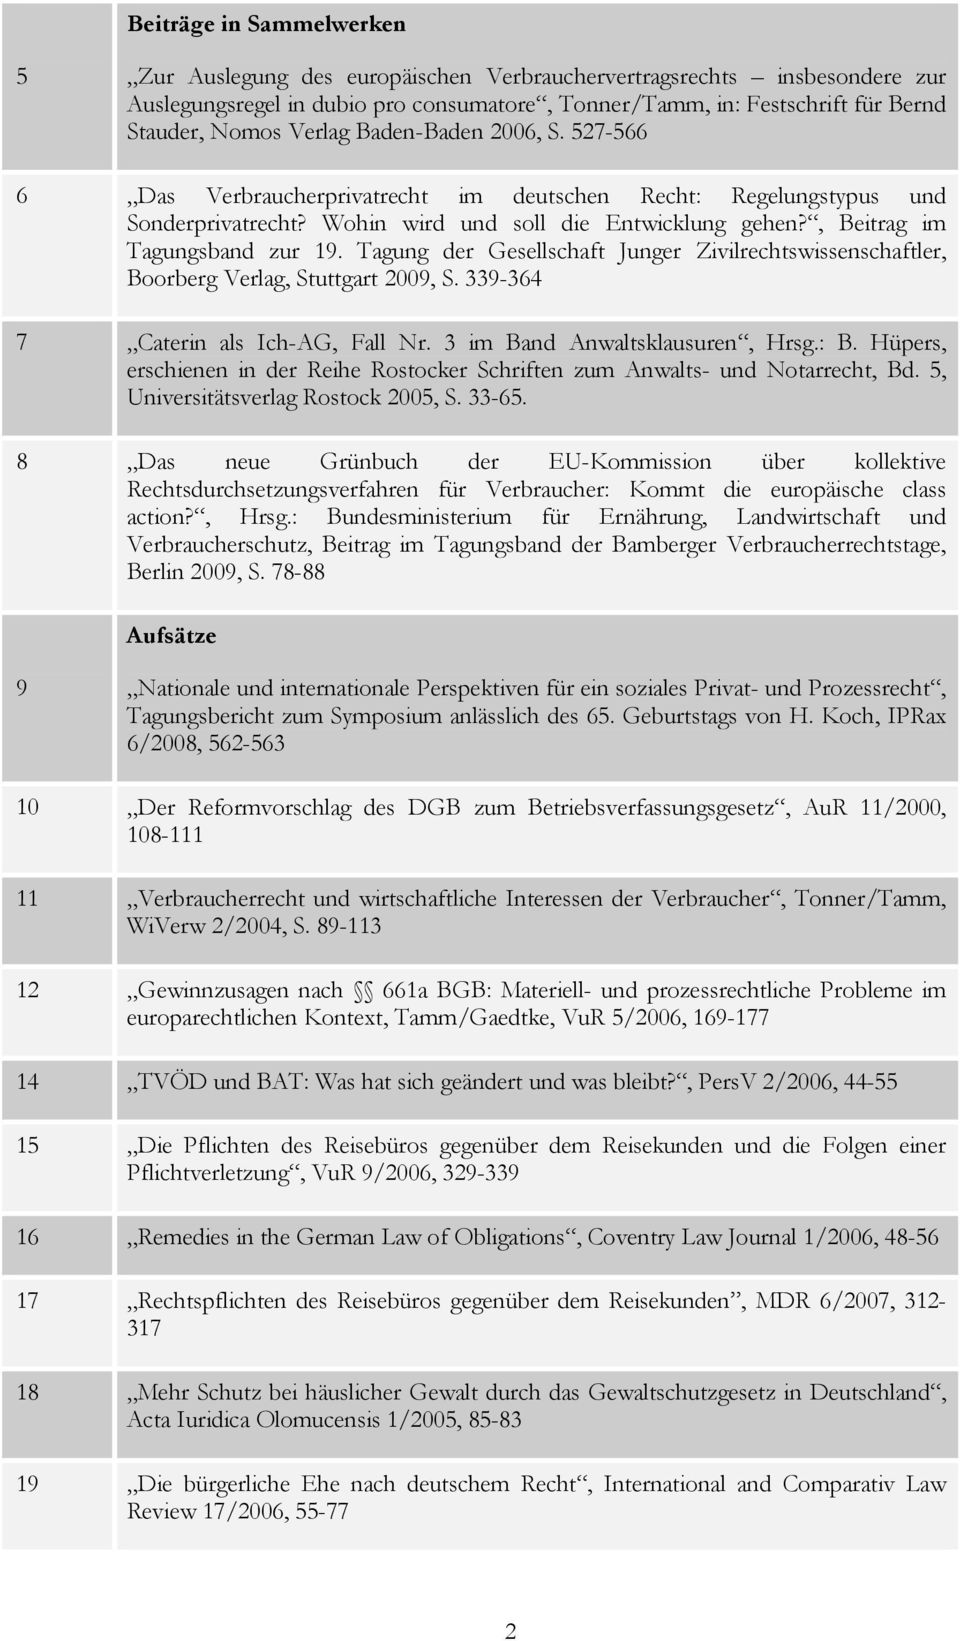 Tagung der Gesellschaft Junger Zivilrechtswissenschaftler, Boorberg Verlag, Stuttgart 2009, S. 339-364 7 Caterin als Ich-AG, Fall Nr. 3 im Band Anwaltsklausuren, Hrsg.: B.